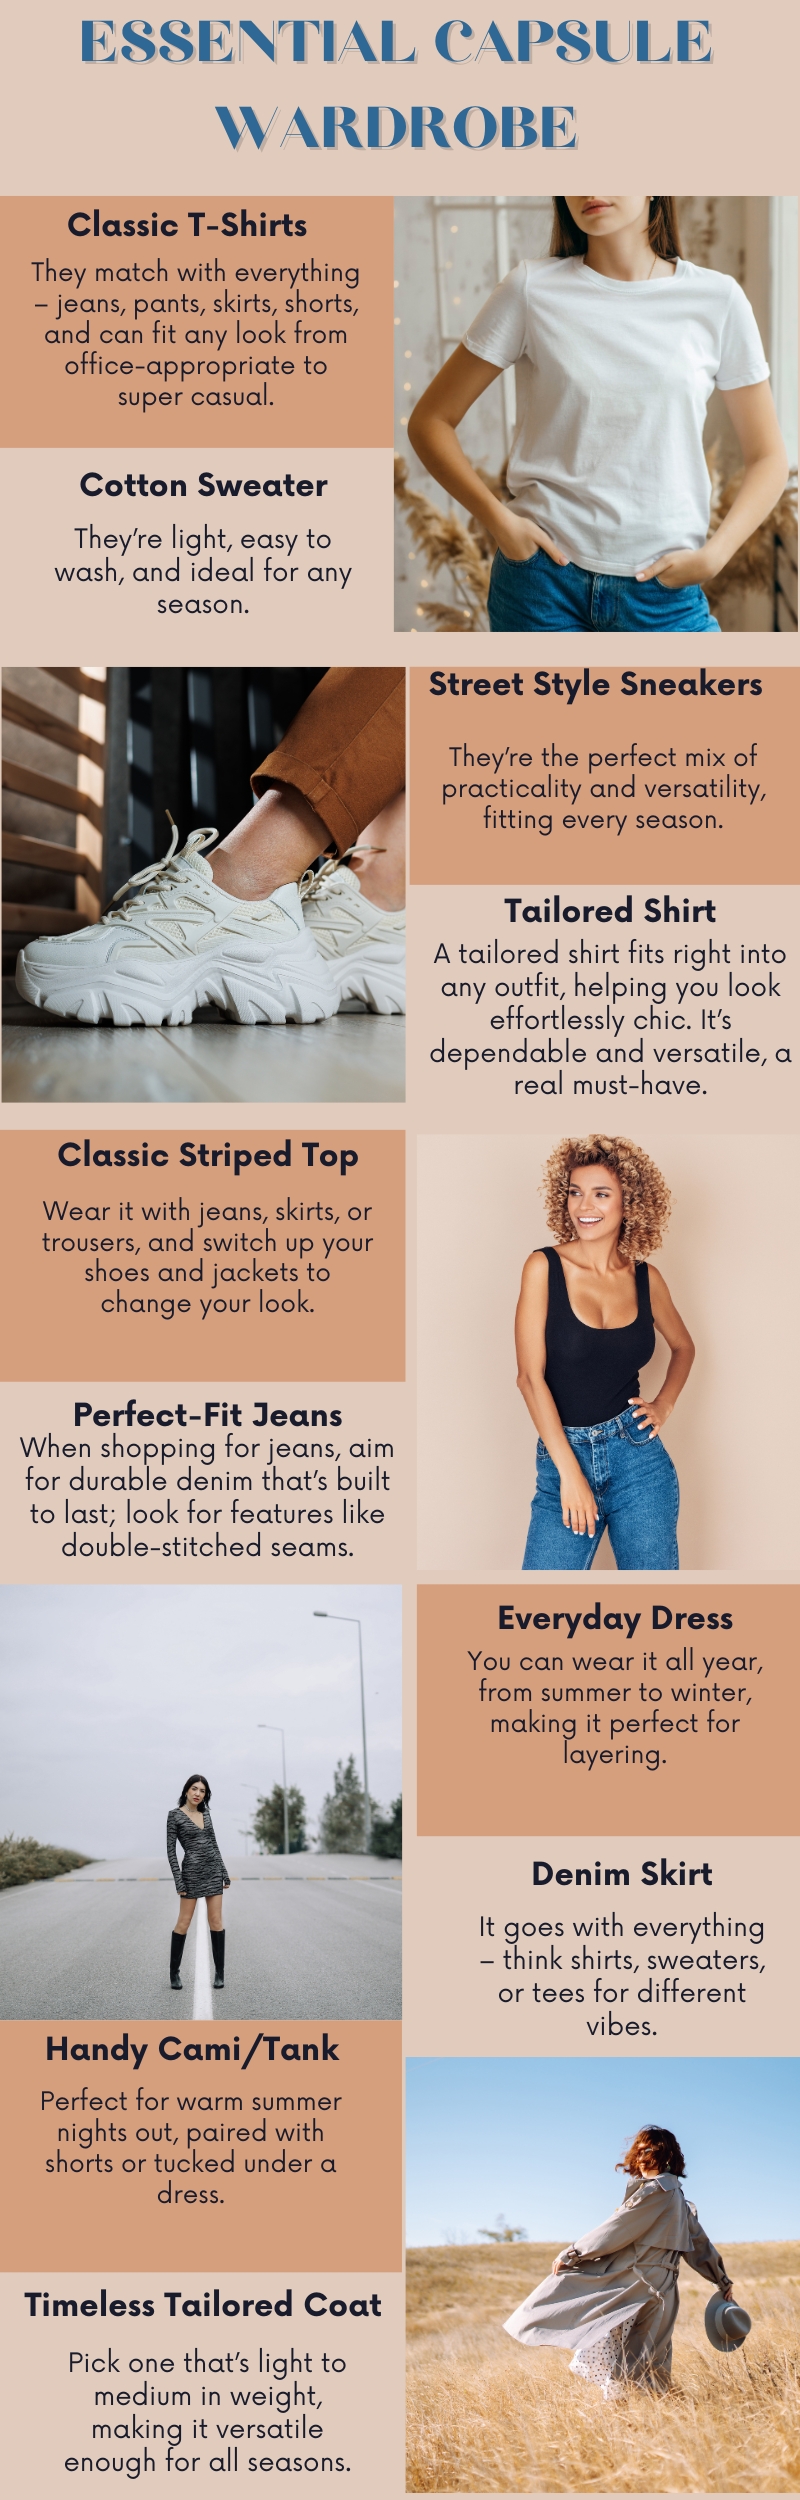 Essential Capsule Wardrobe infographic